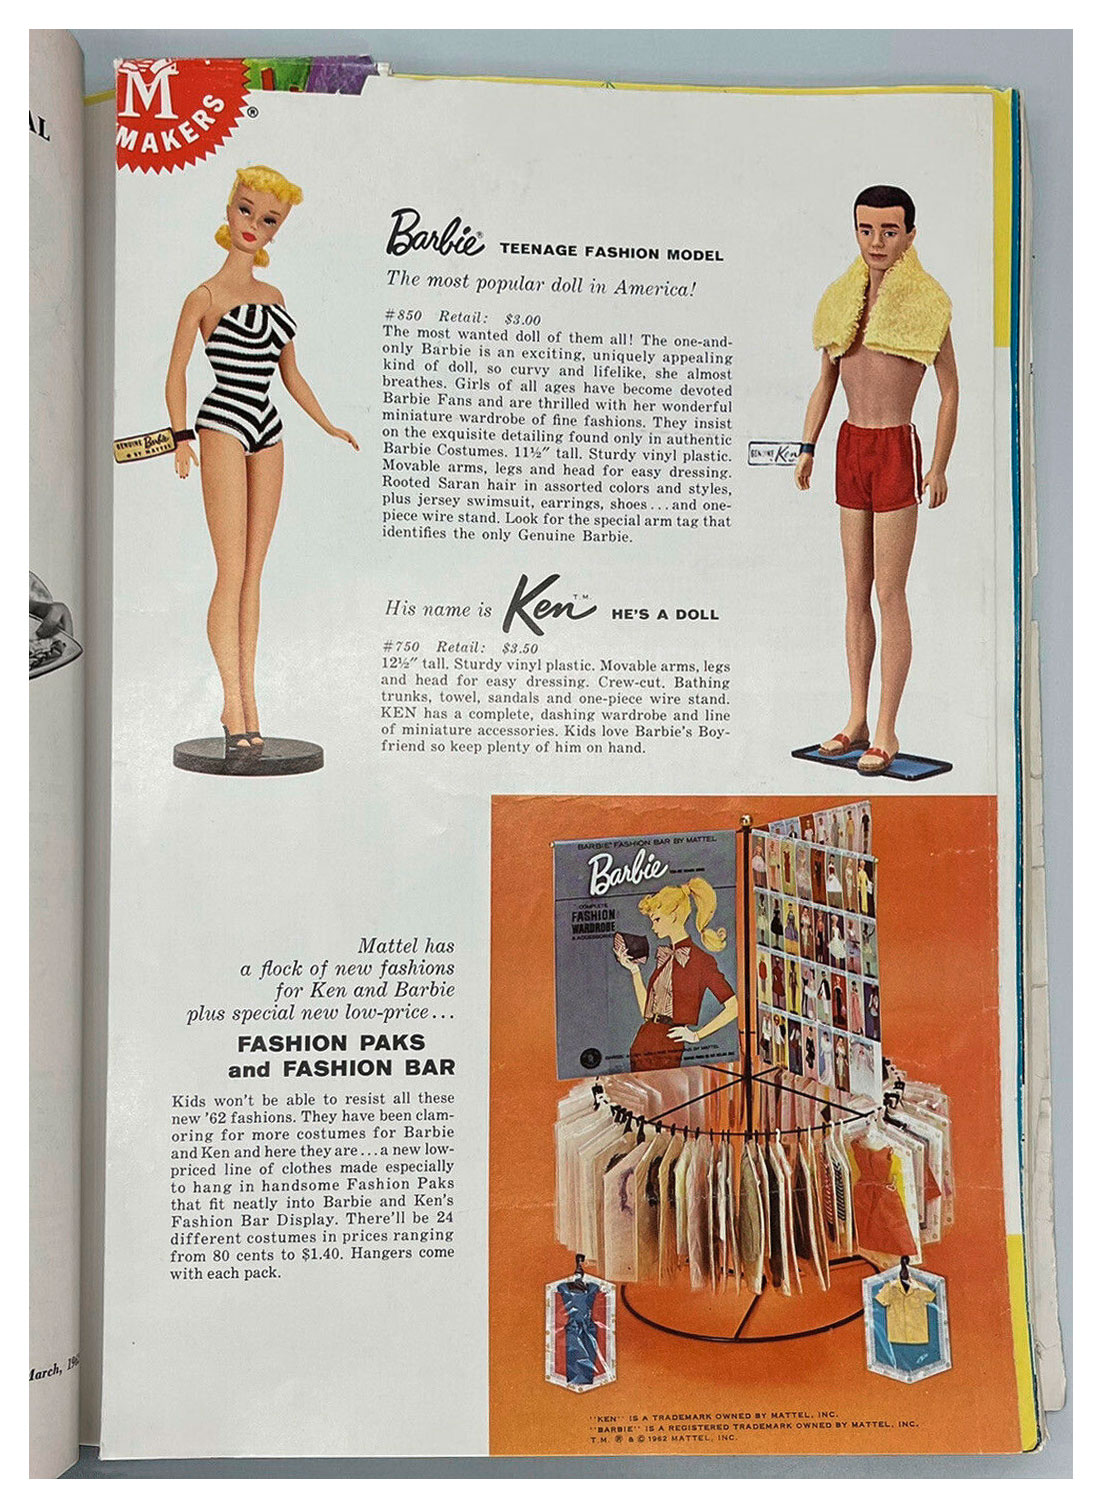 From 1962 Toys & Novelties magazine